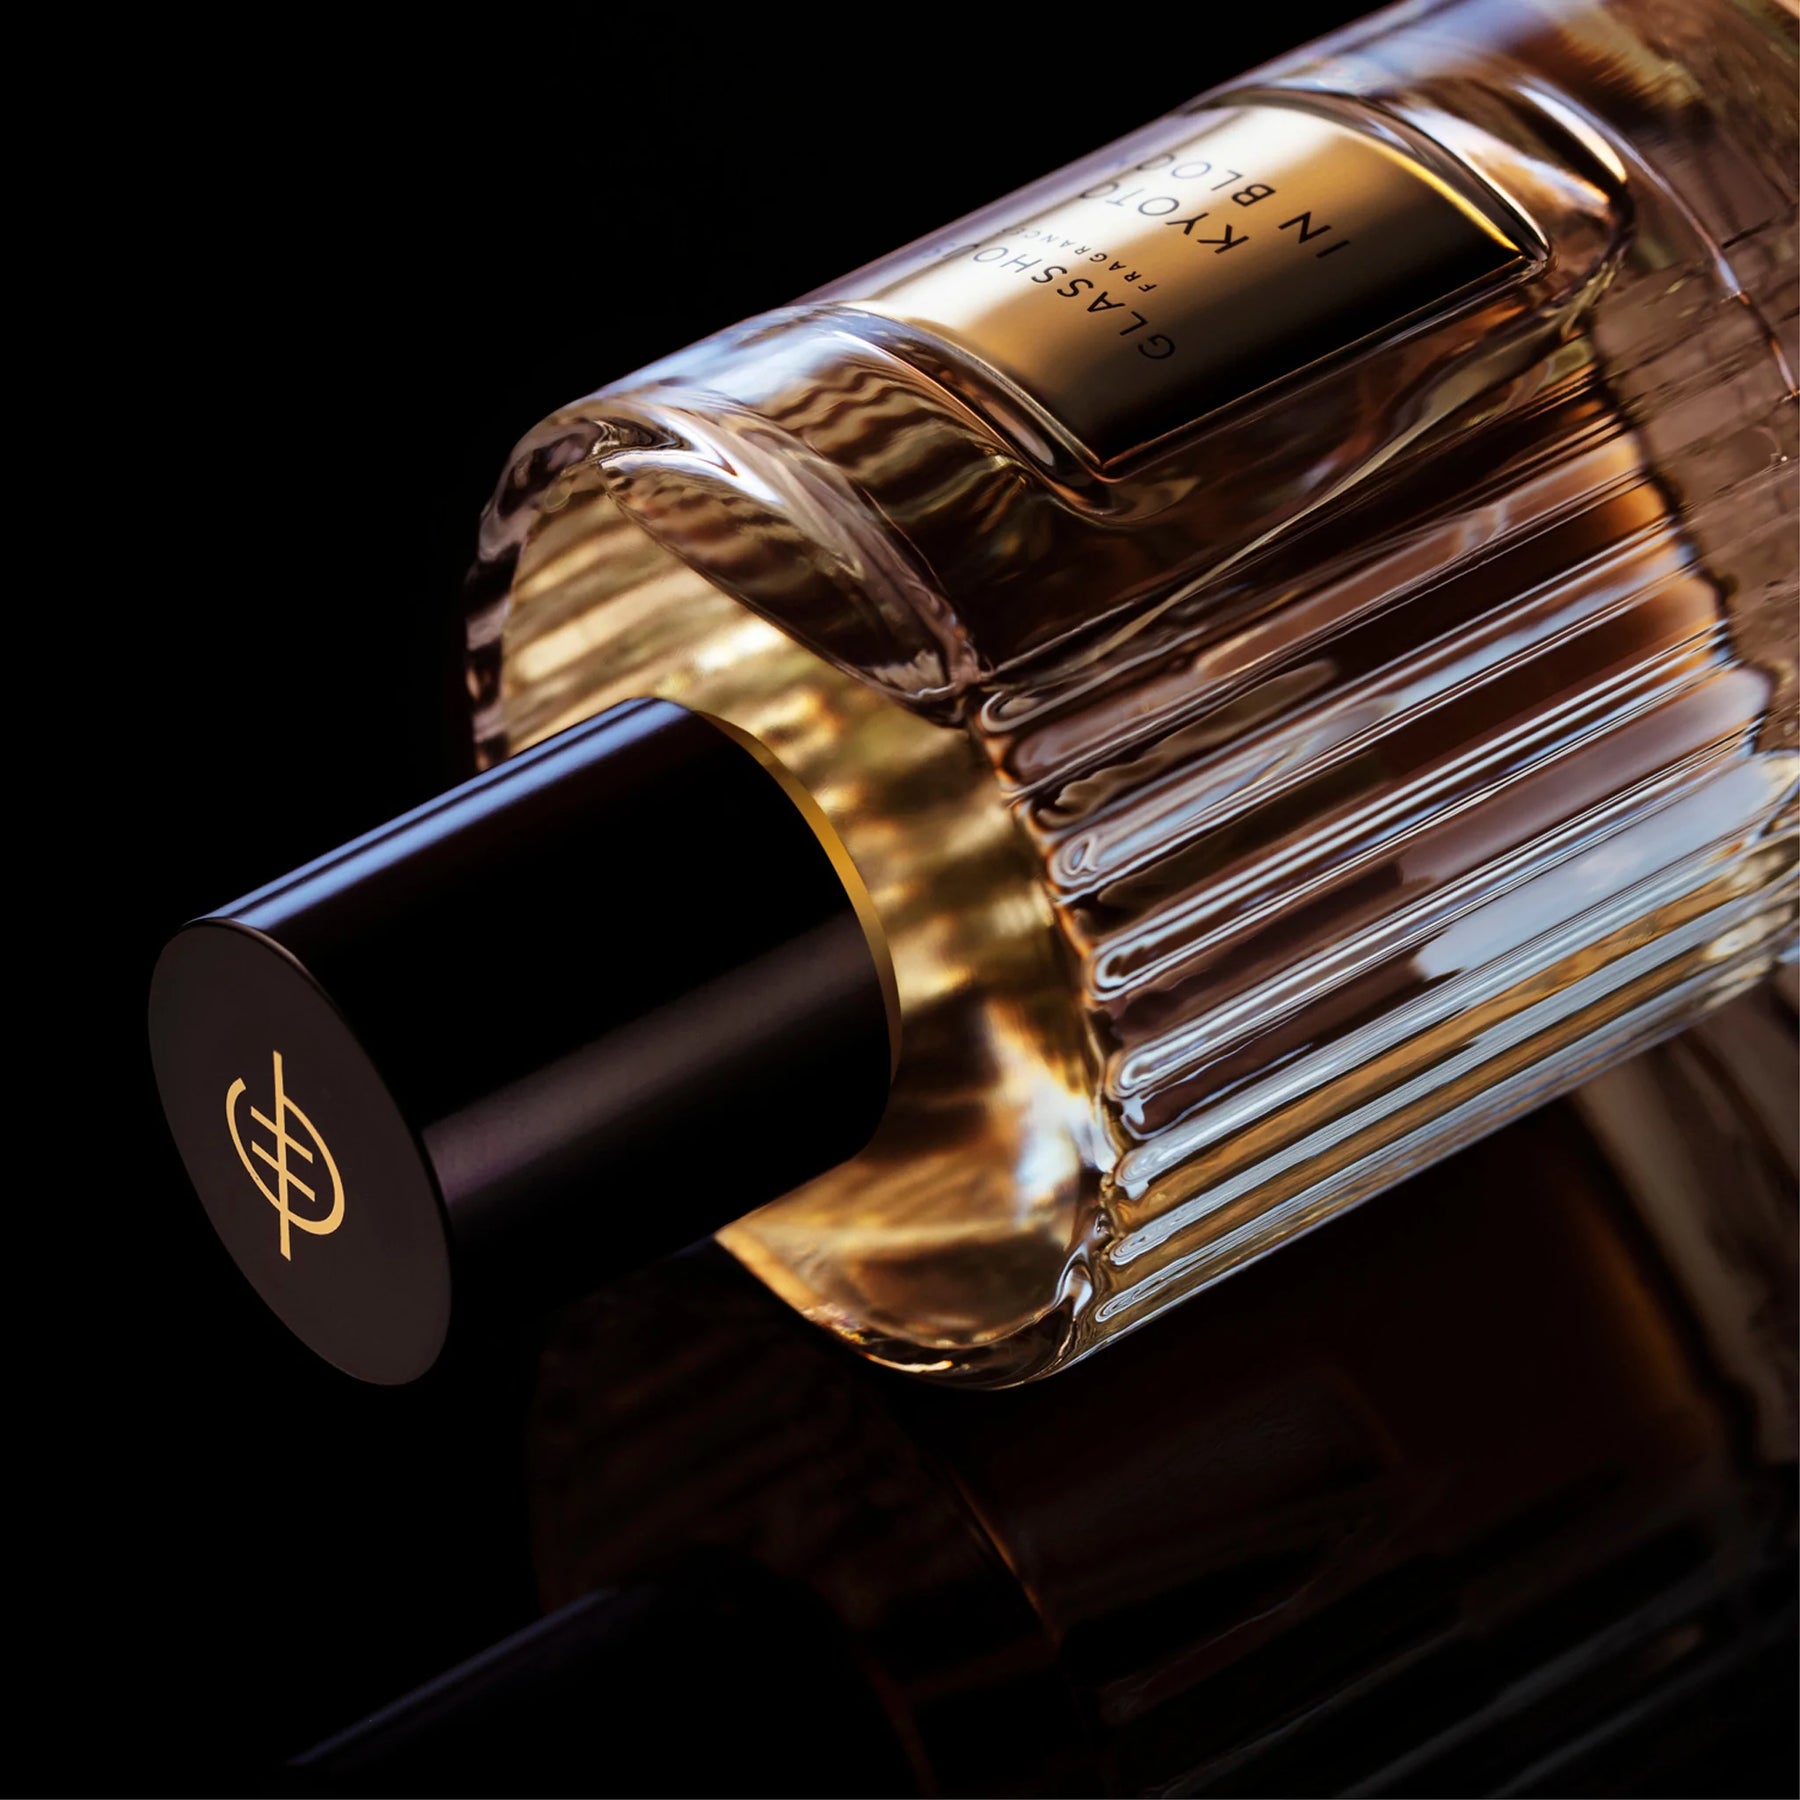 Glasshouse Fragrance Eau de Parfum 3.4 fl oz